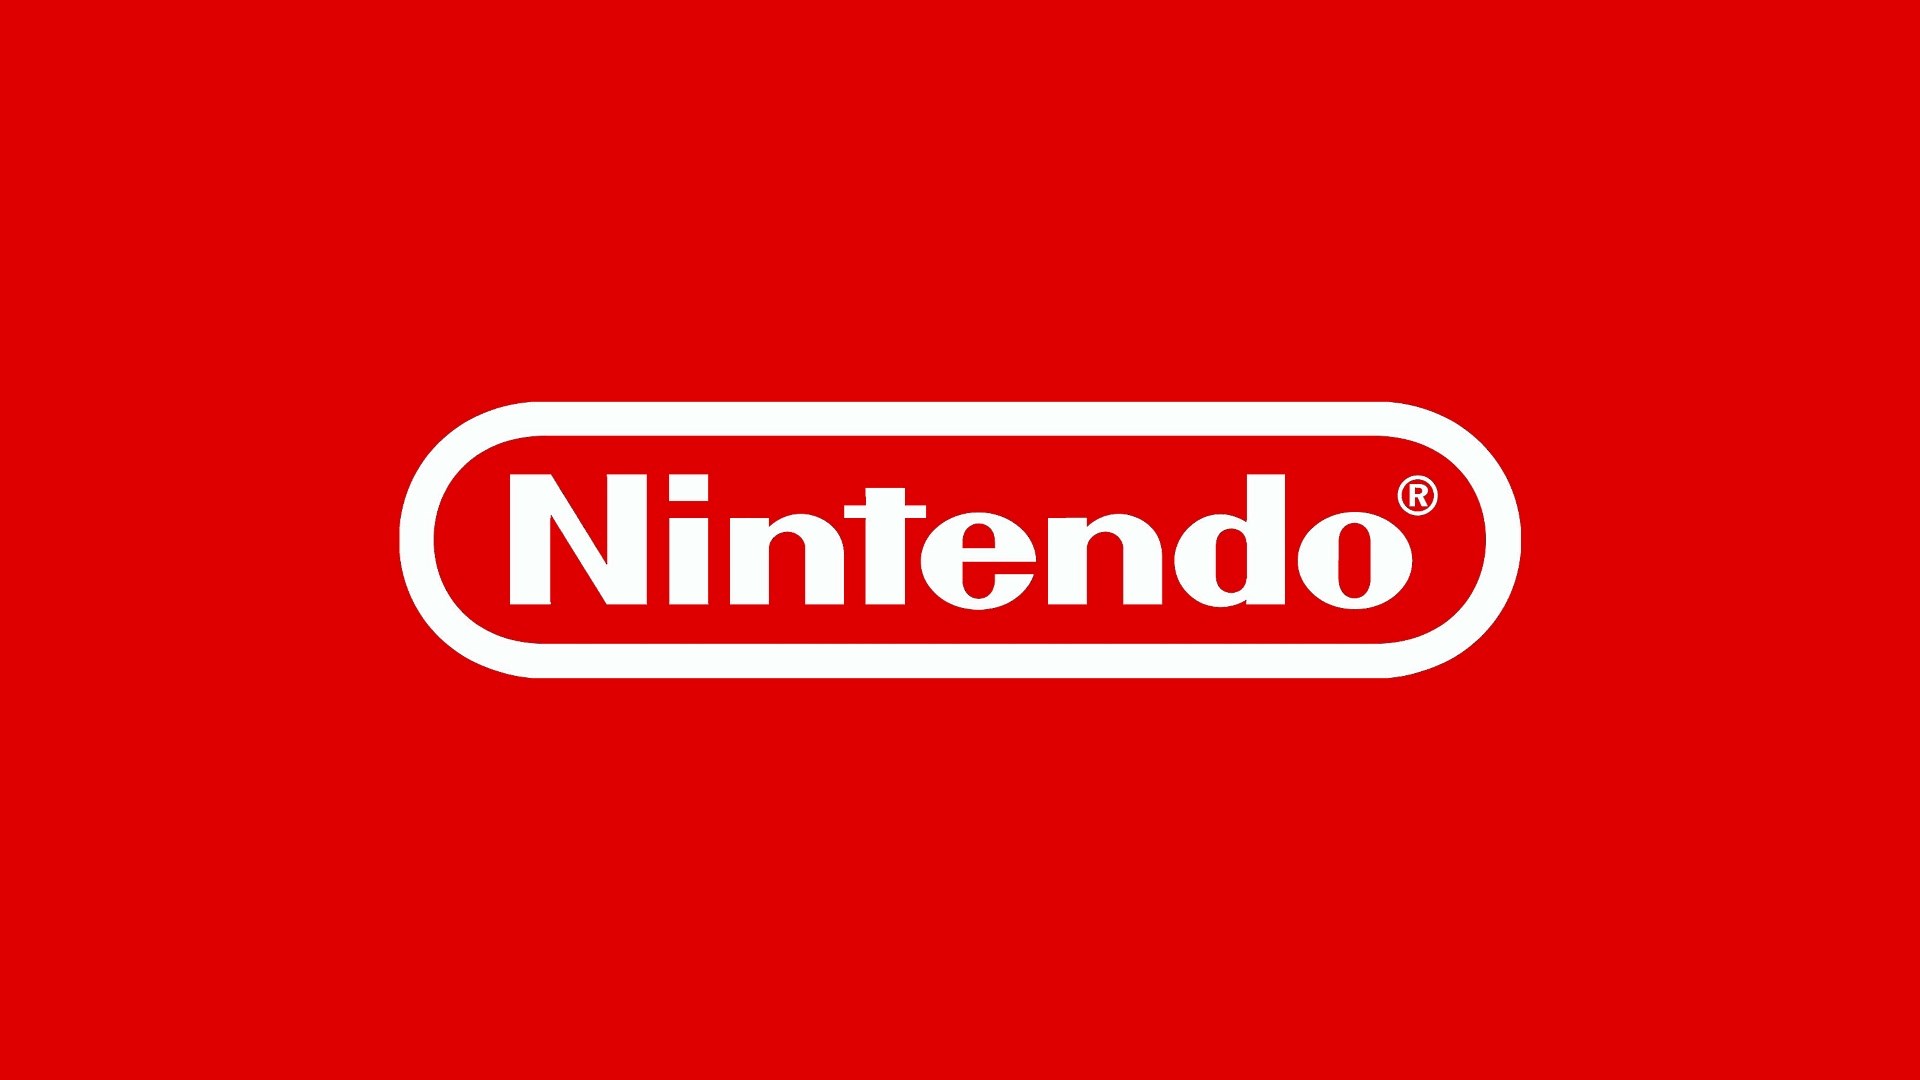 Nintendo durmak bilmiyor: Switch satışları 85 milyona ulaştı